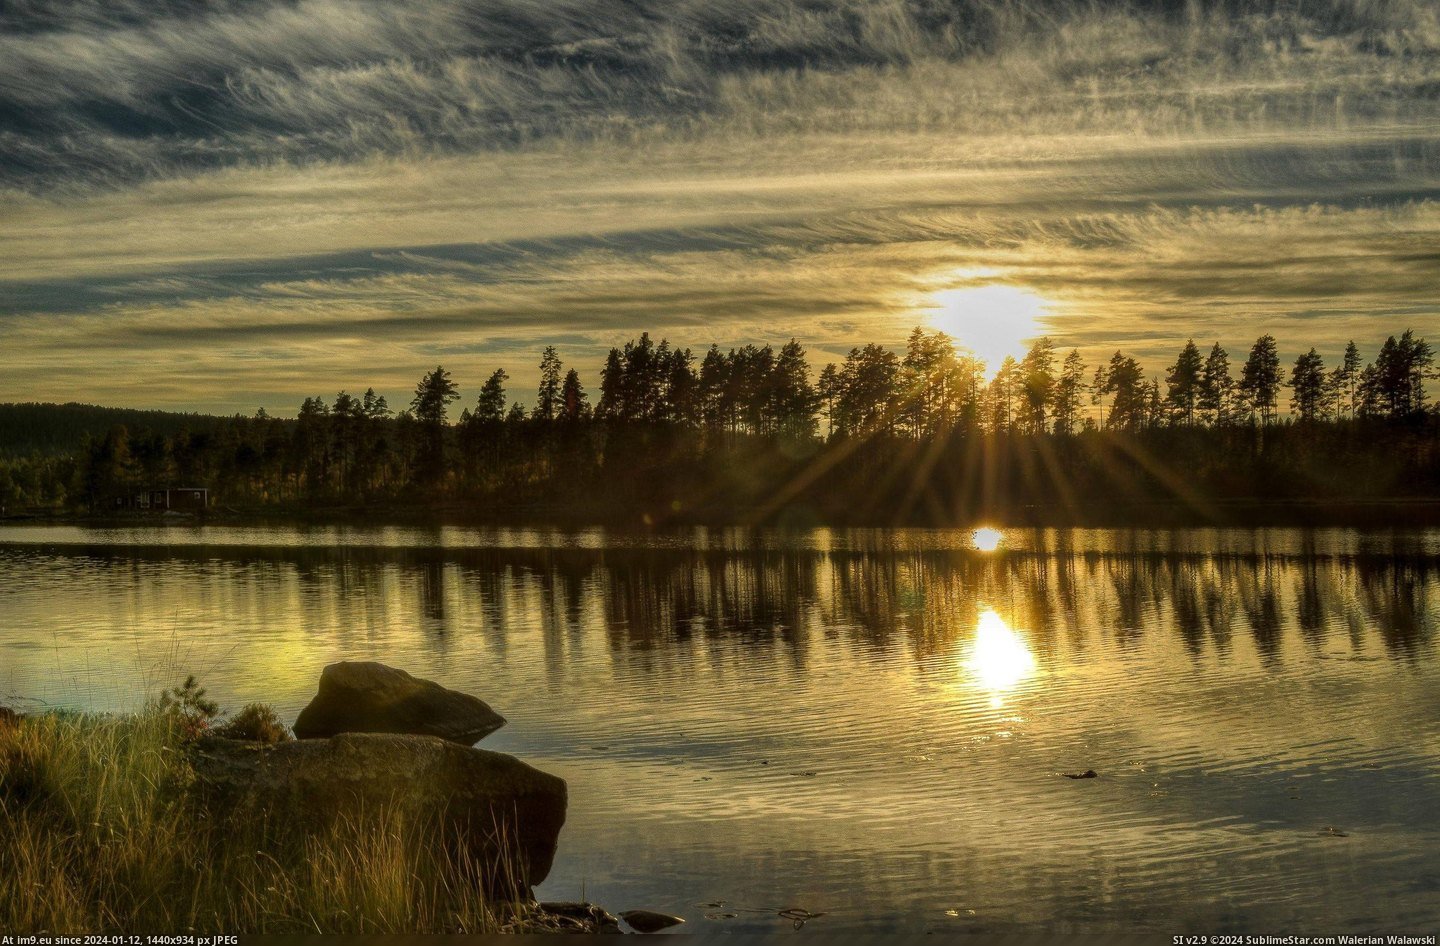 #Evening #Sweden #Autumn [Earthporn] Autumn evening in Sweden [2700x1764] [OC] Pic. (Bild von album My r/EARTHPORN favs))